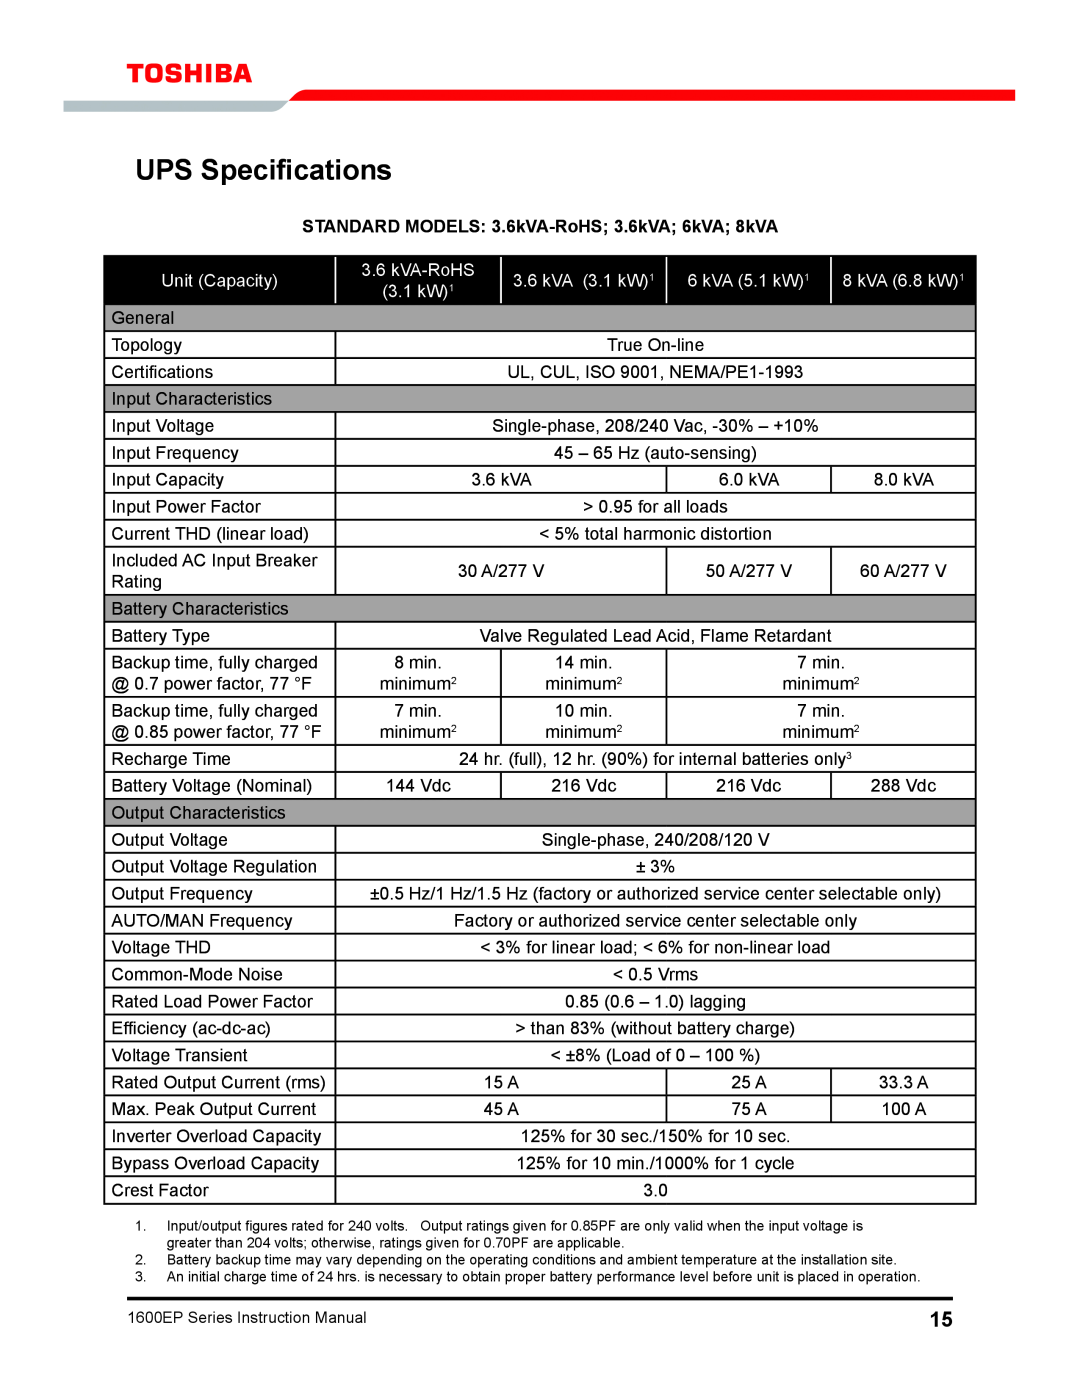 Toshiba 1600EP Series manual UPS Specifications, Standard Models 3.6kVA-RoHS 3.6kVA 6kVA 8kVA, Unit Capacity, kVA 3.1 kW1 